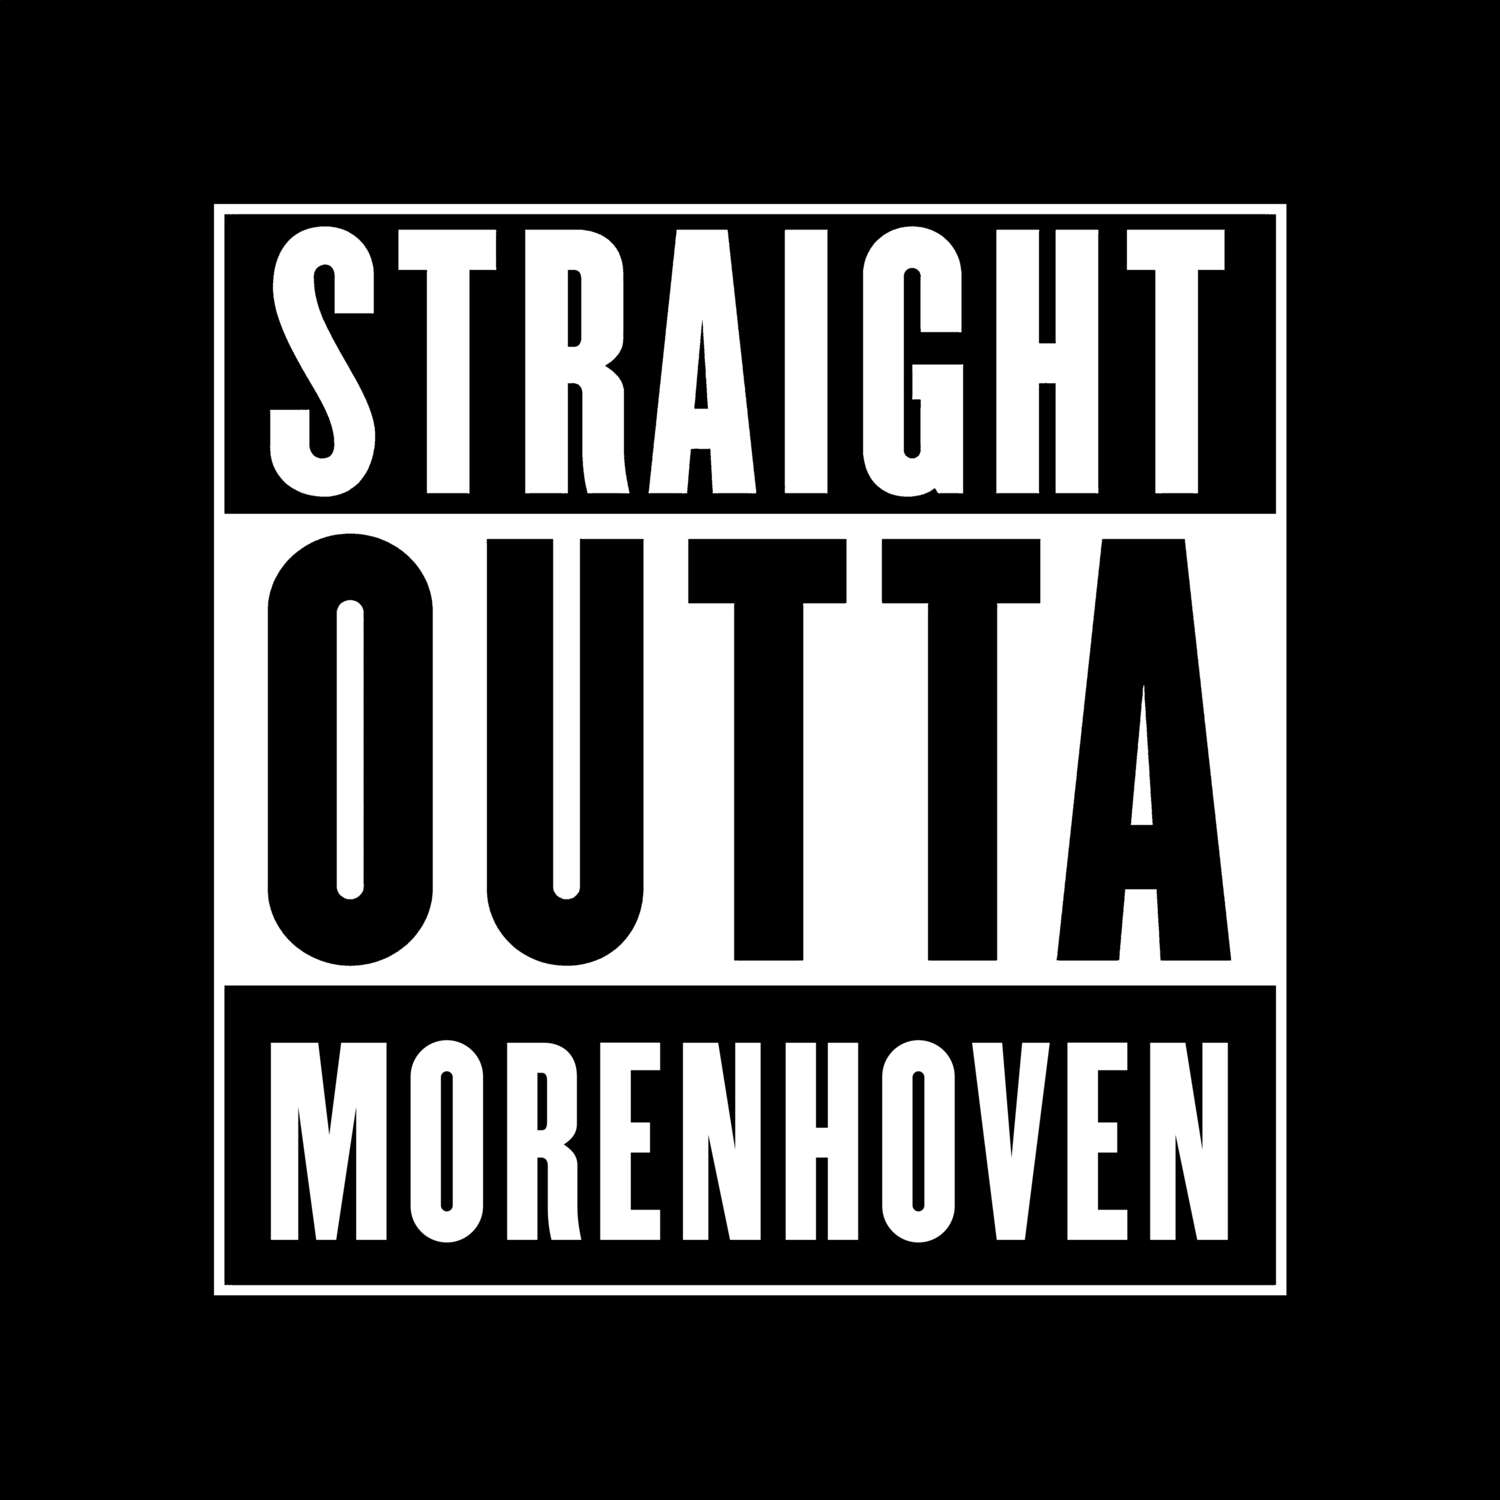 Morenhoven T-Shirt »Straight Outta«